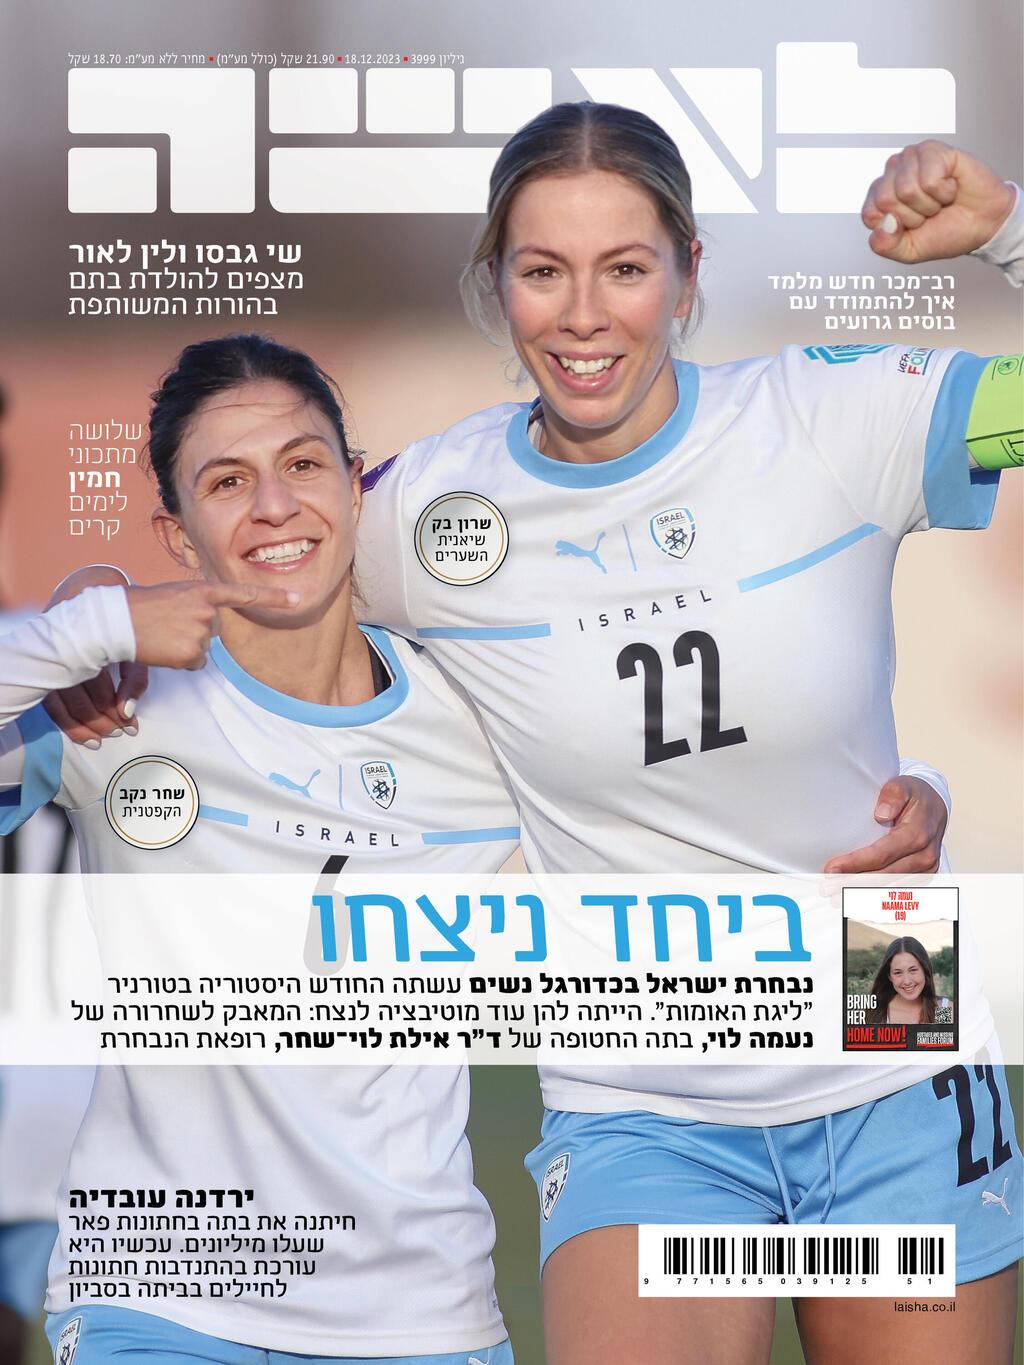  שחקניות נבחרת ישראל נשים בכדורגל, שרון בק ושחר נקב